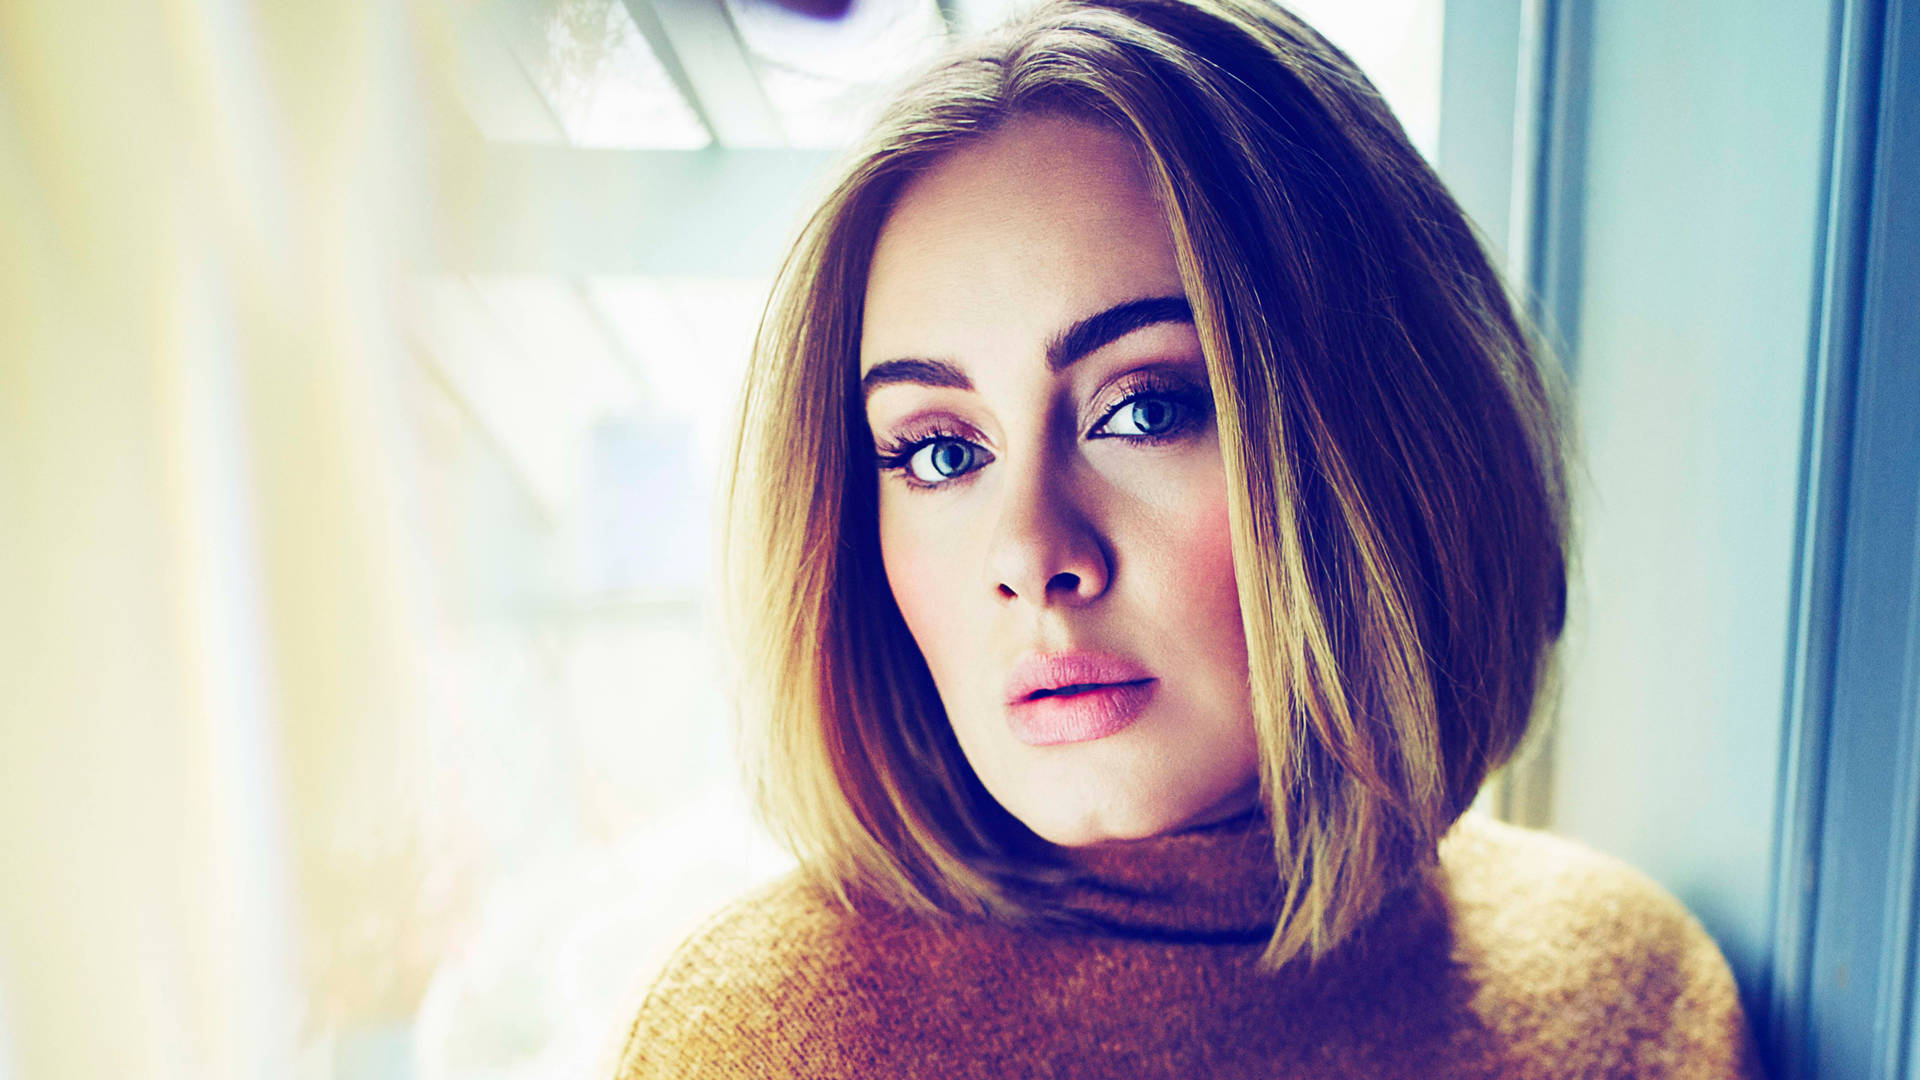 Adele Short Hair Photoshoot Background